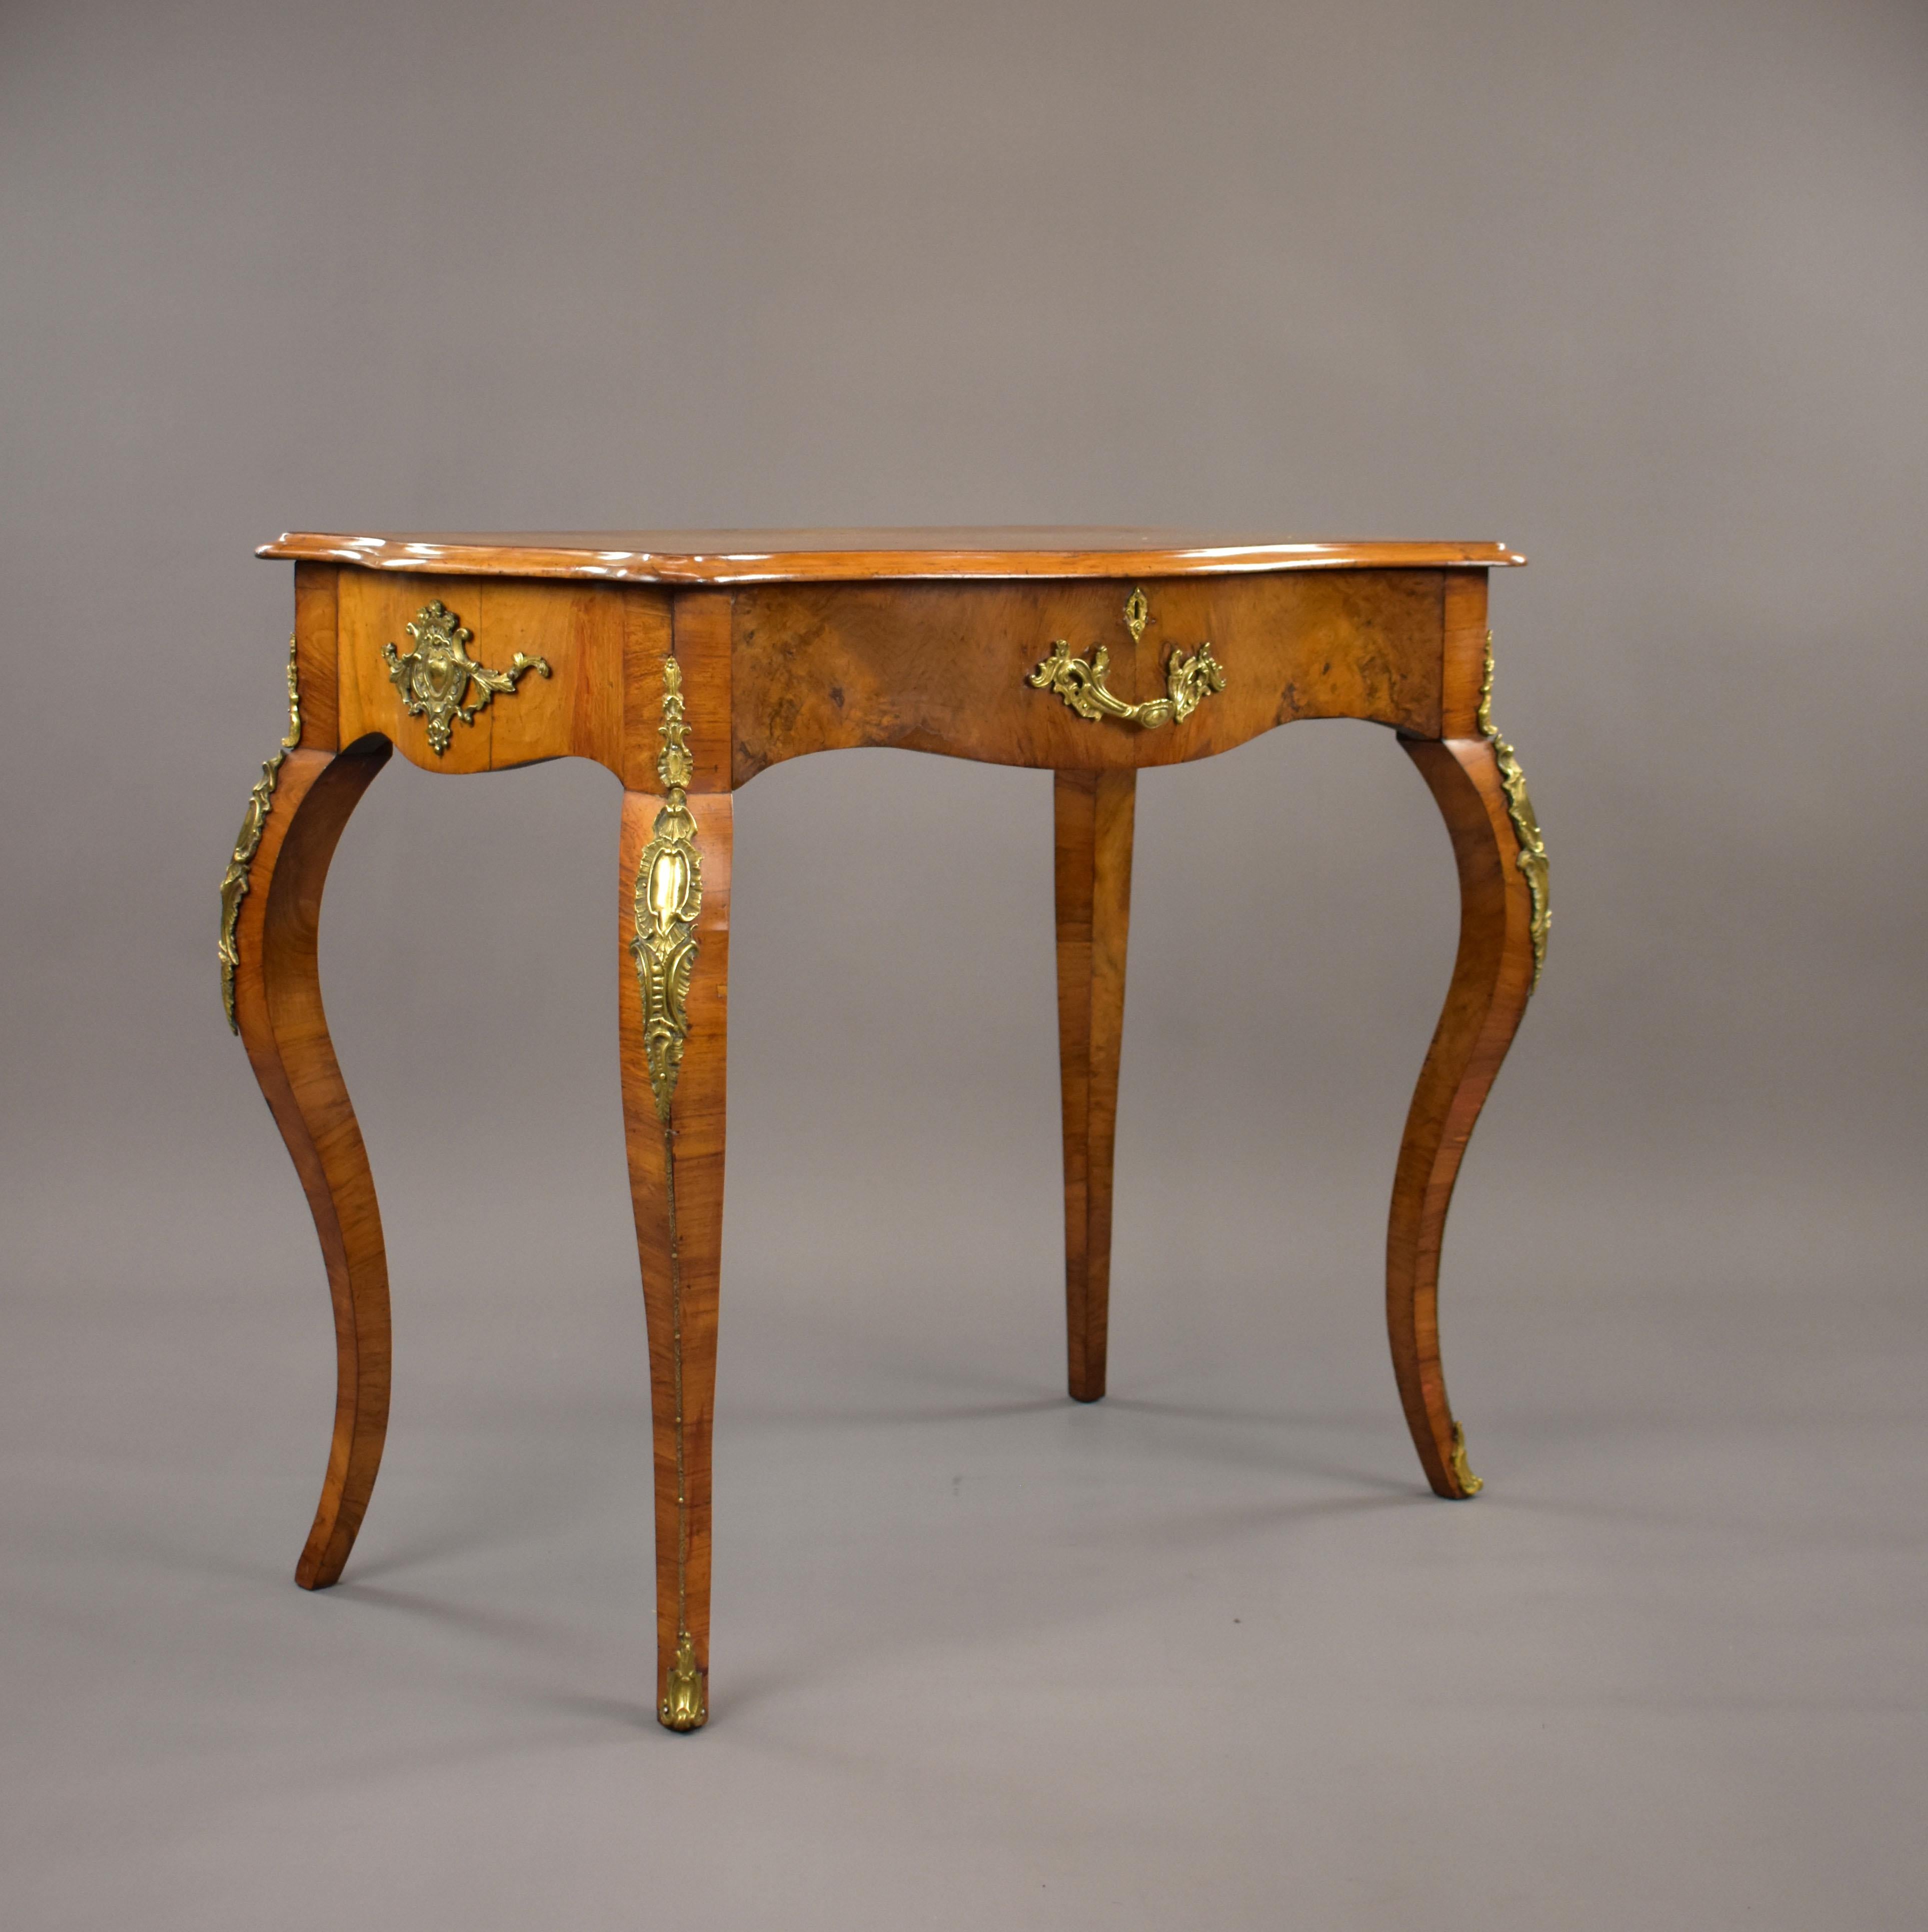 Zum Verkauf steht ein französischer Schreibtisch aus Wurzelnussholz aus dem 19. Jahrhundert mit einer einzigen Schublade, der auf elegant geformten Beinen steht, von denen die beiden vorderen mit dekorativen Ormolu-Beschlägen versehen sind. Der